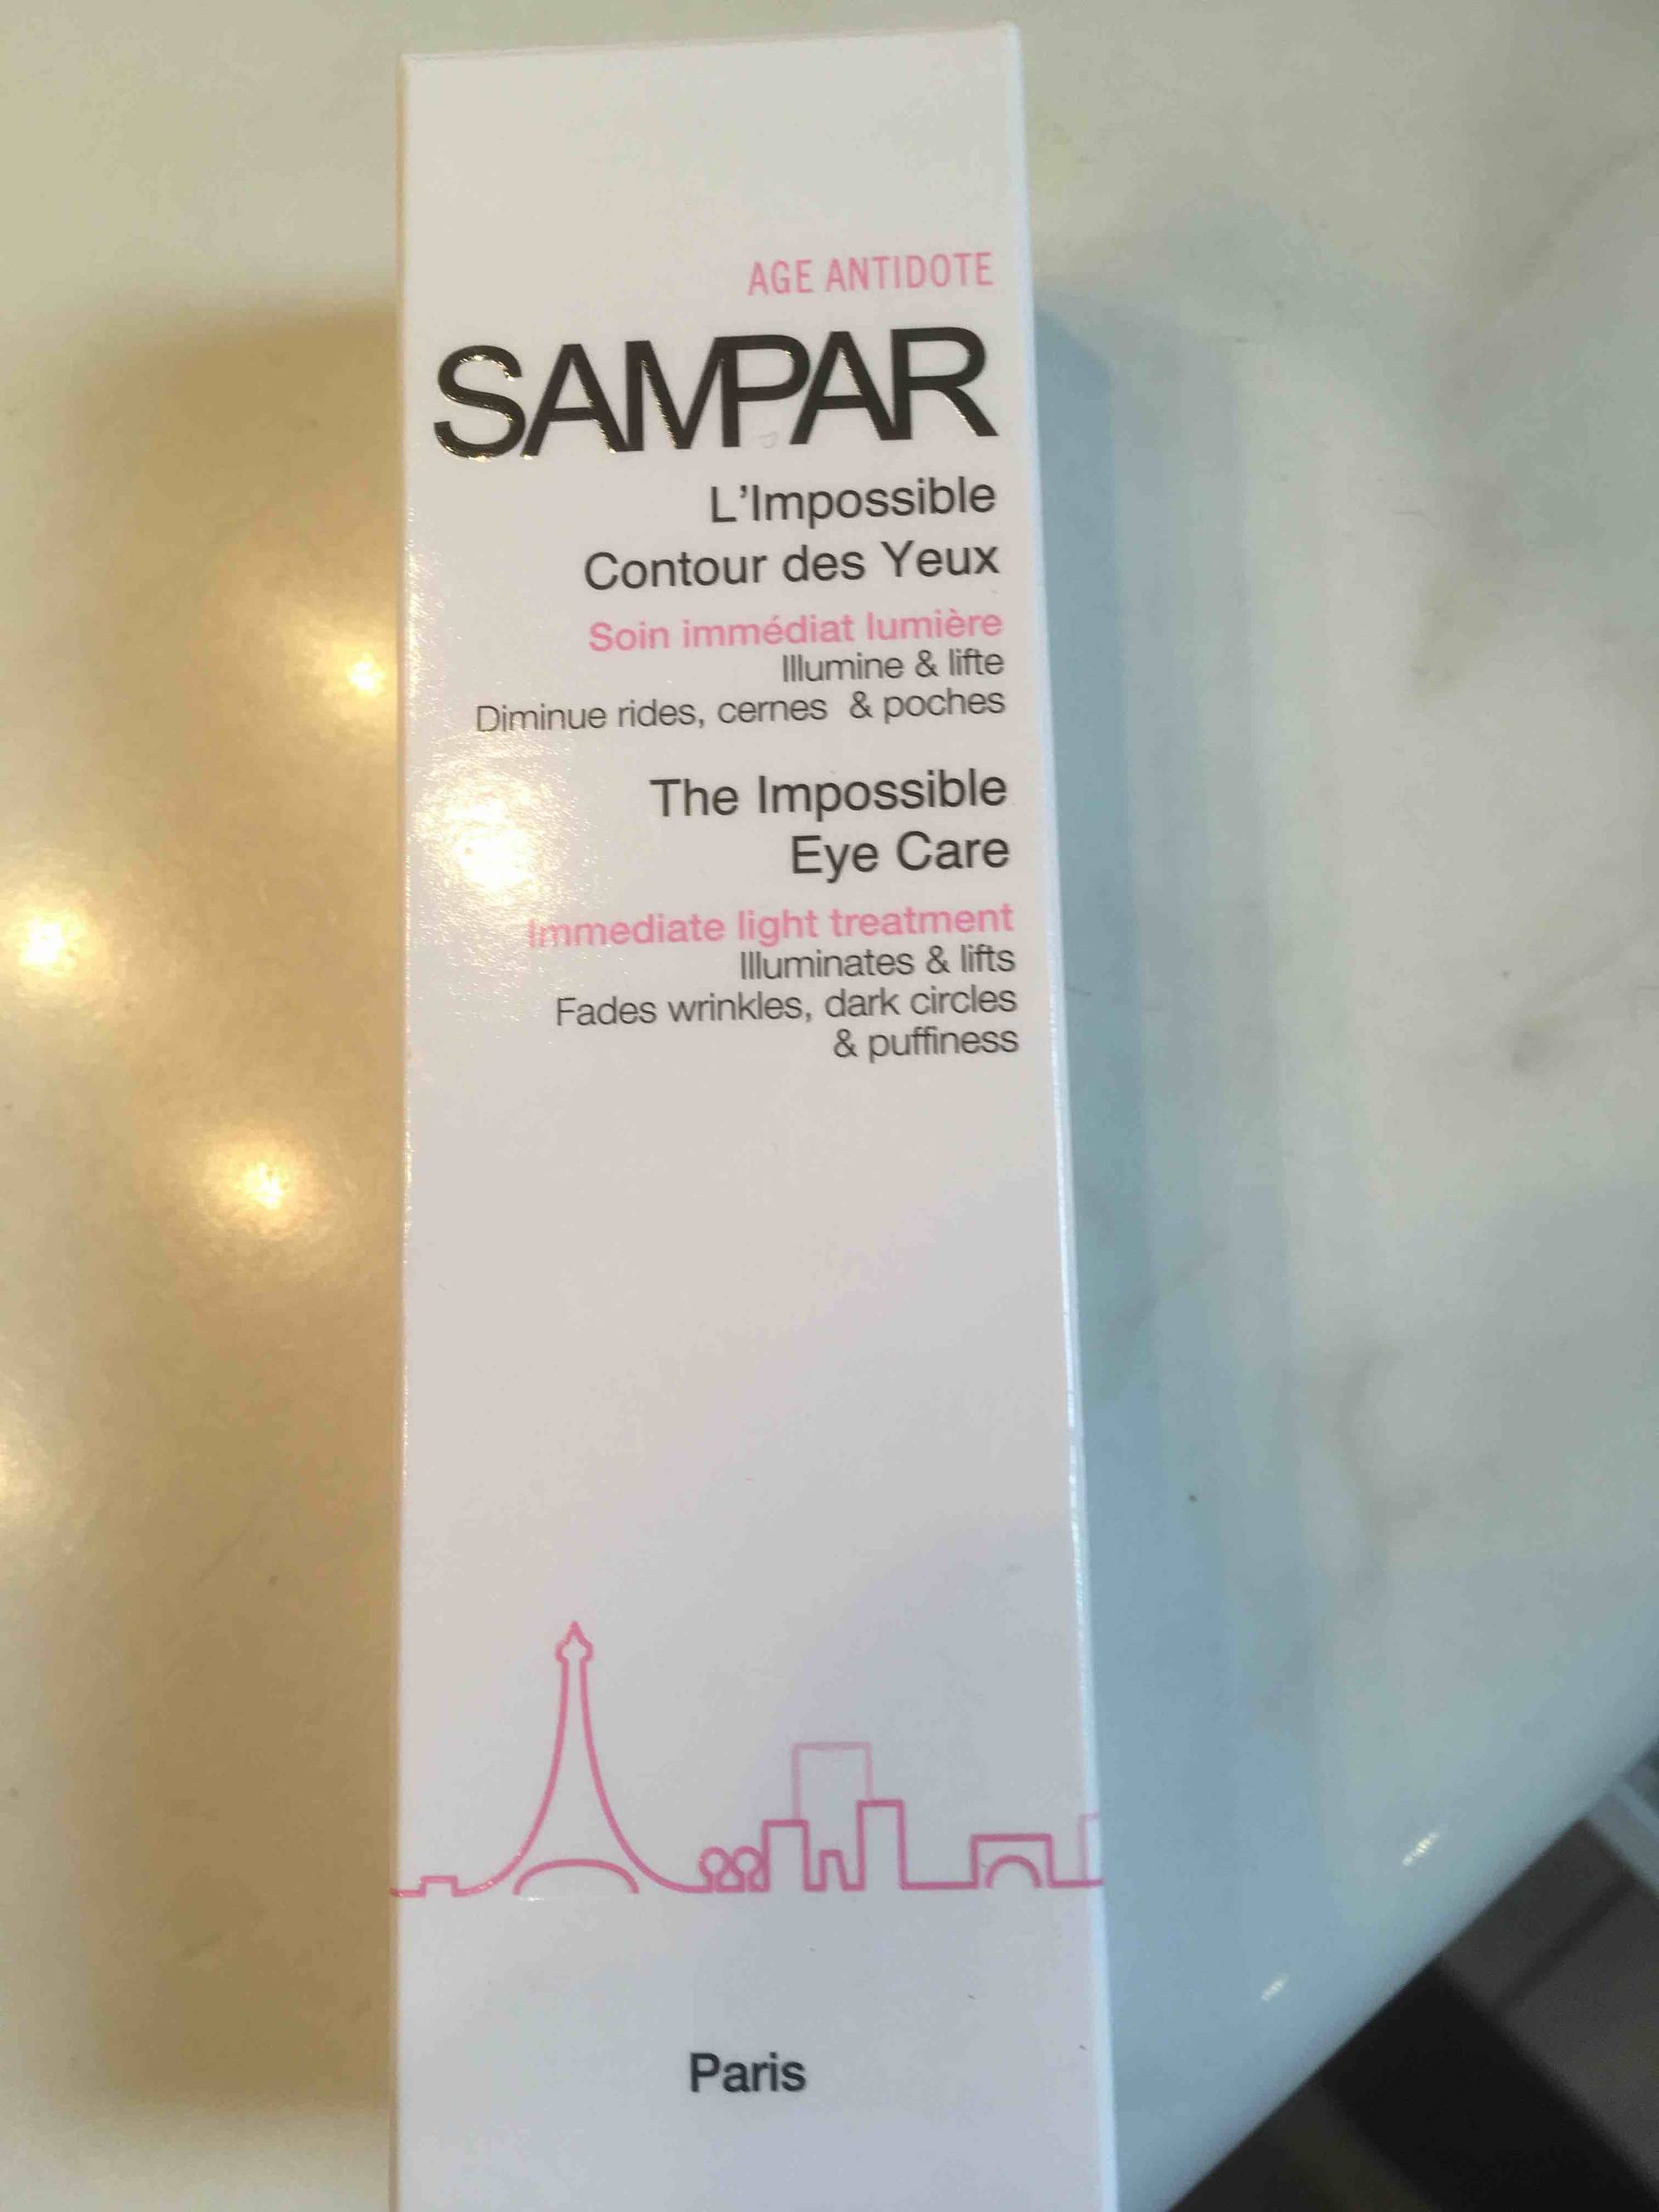 SAMPAR - Age antidote - L'impossible contour des yeux